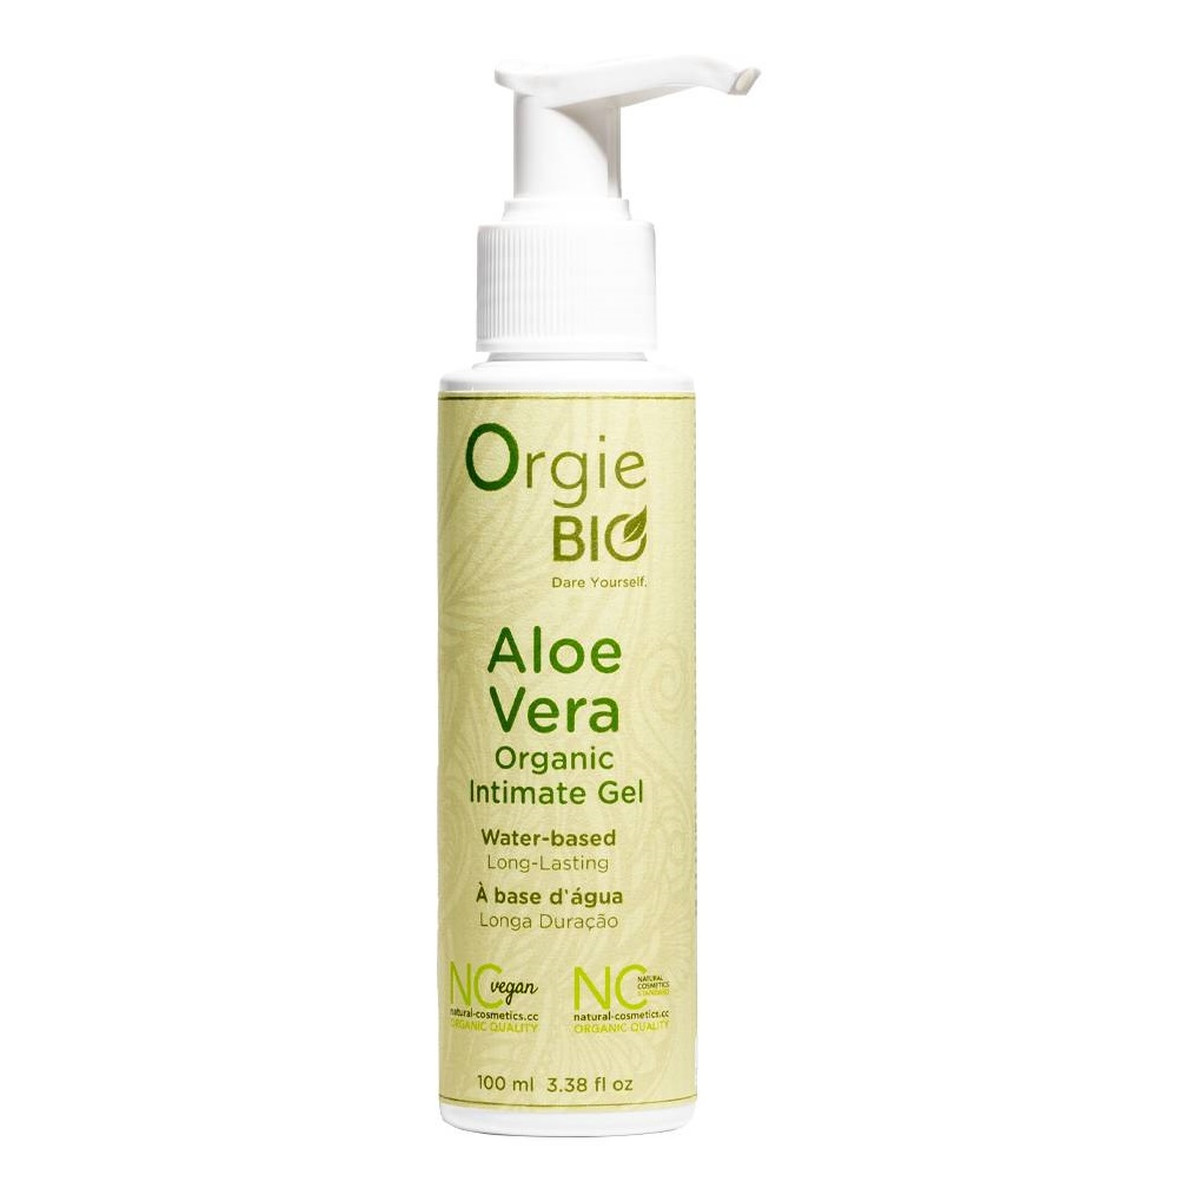 Orgie Bio Aloe Vera Organic Intimate Gel organiczny Żel intymny z aloesem 100ml